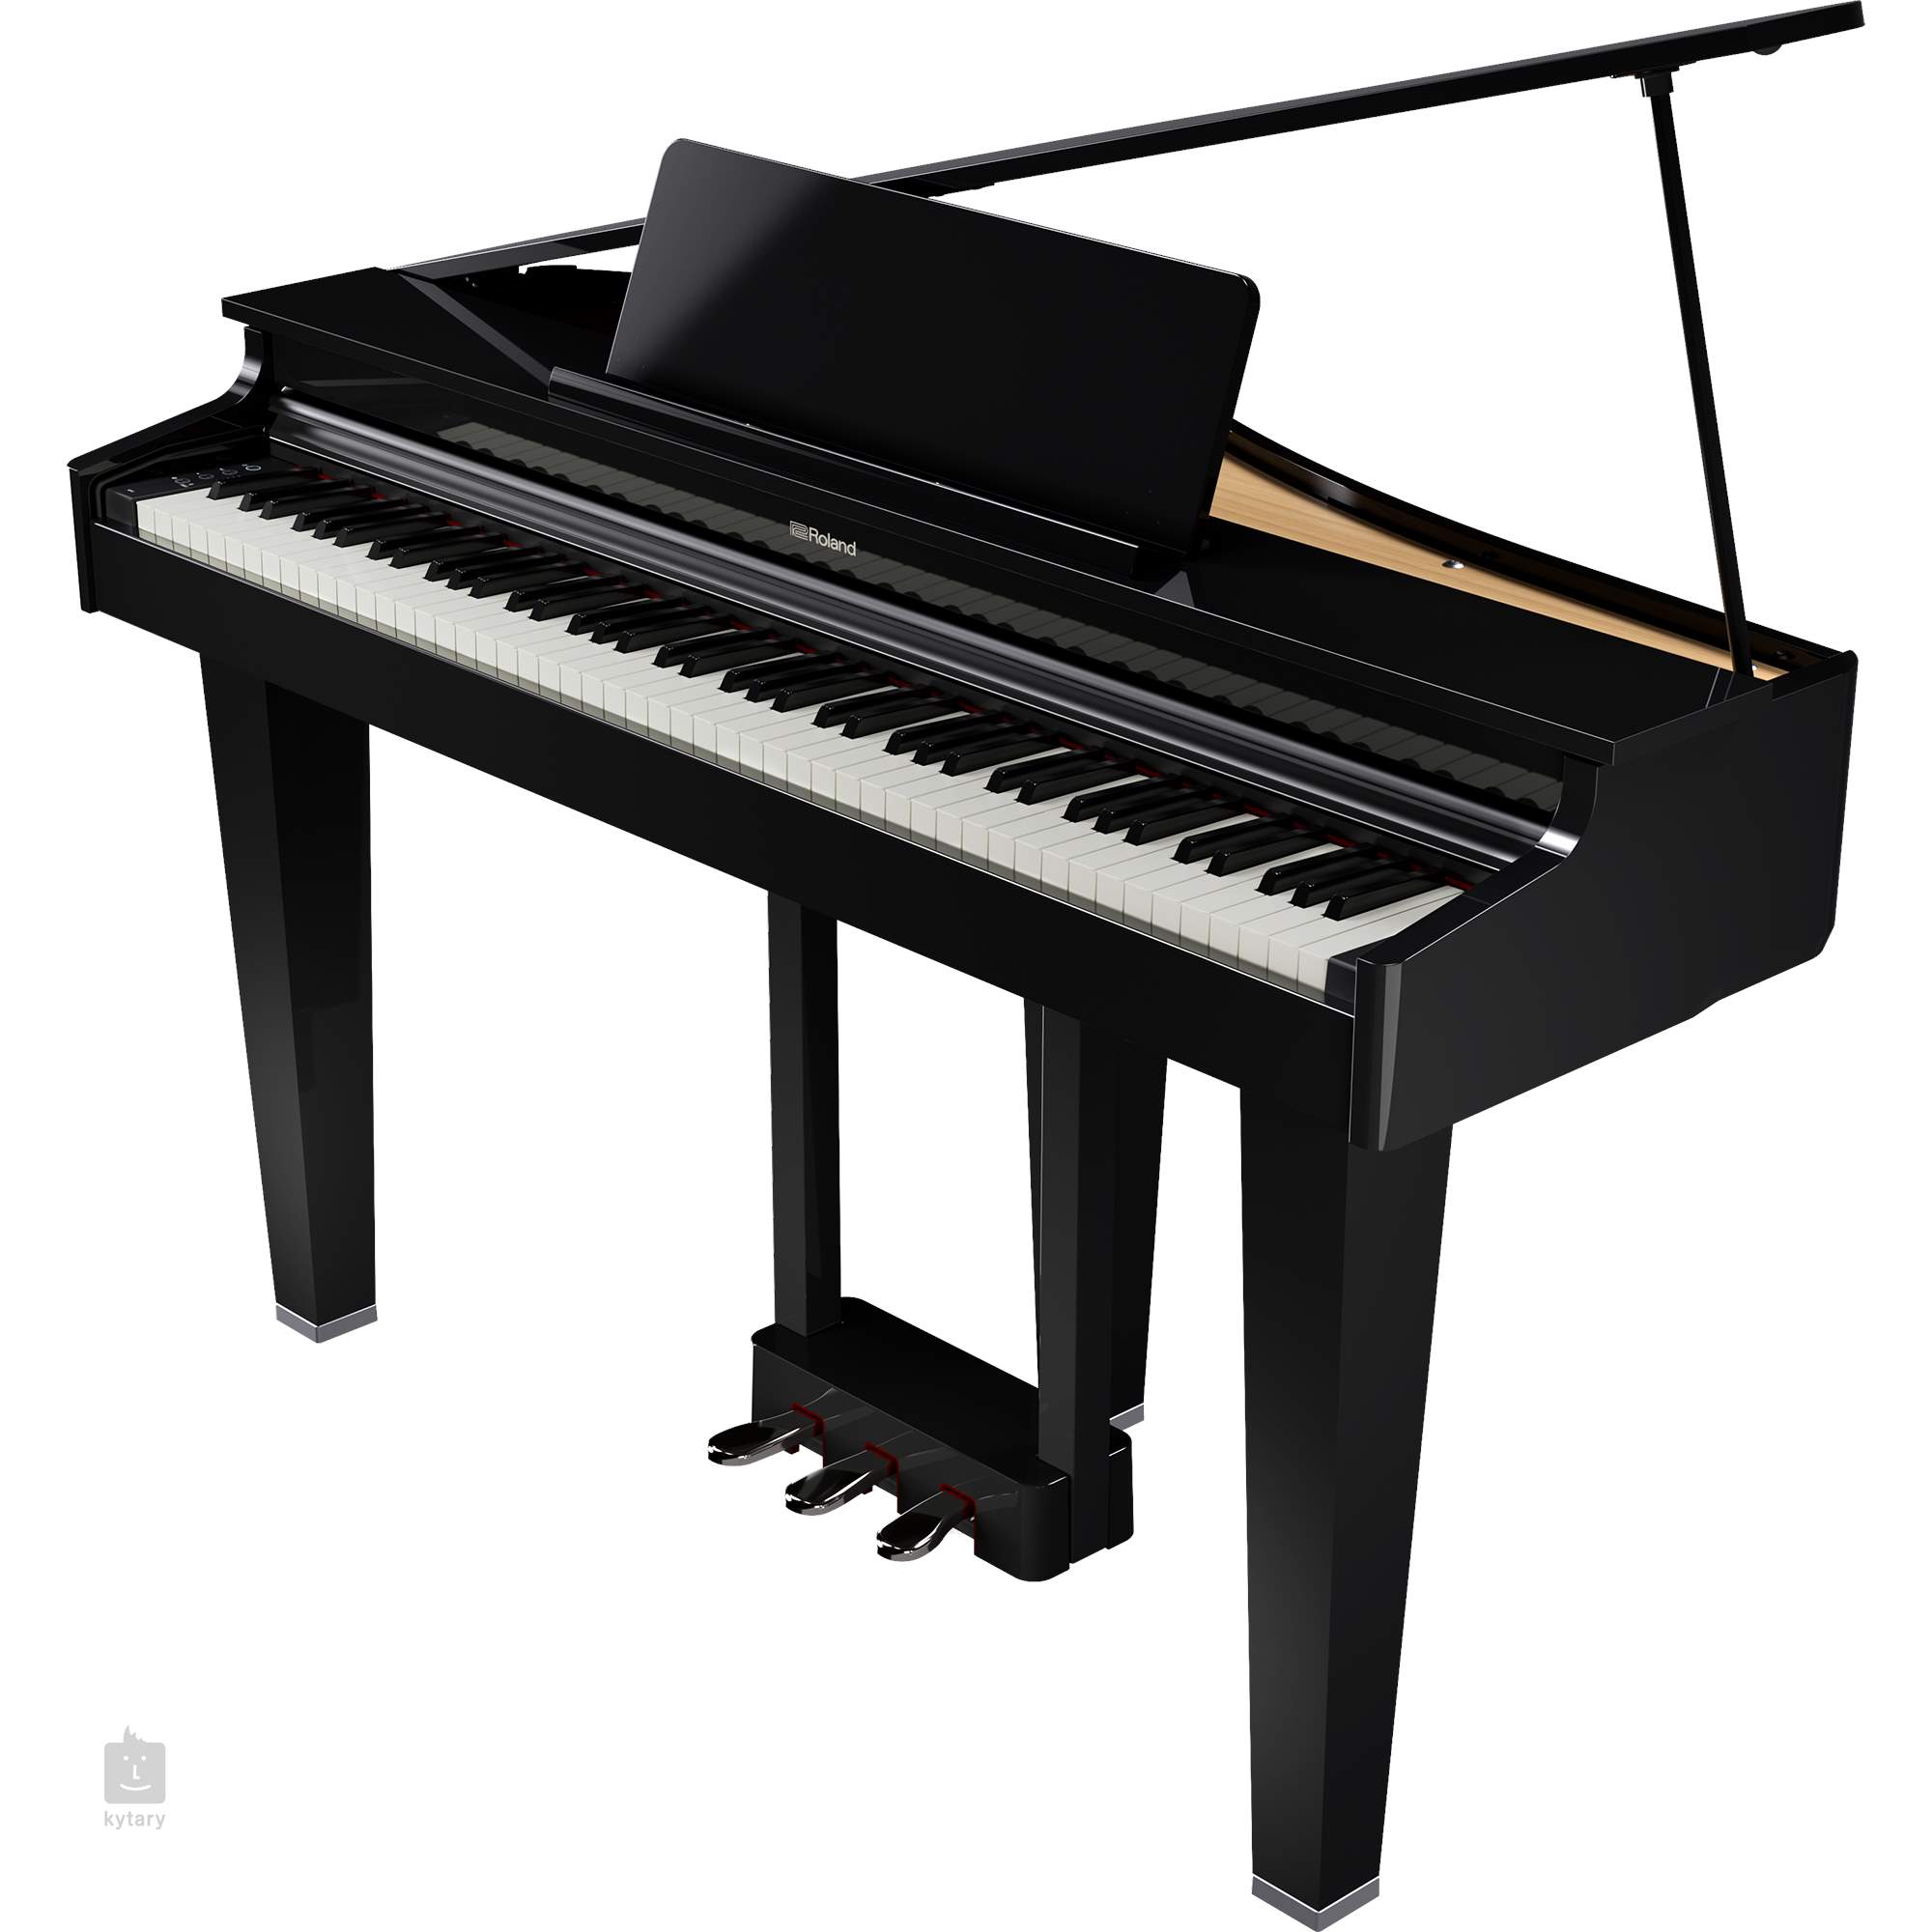 Acheter un piano à petit prix : Guide d'achat et sélection